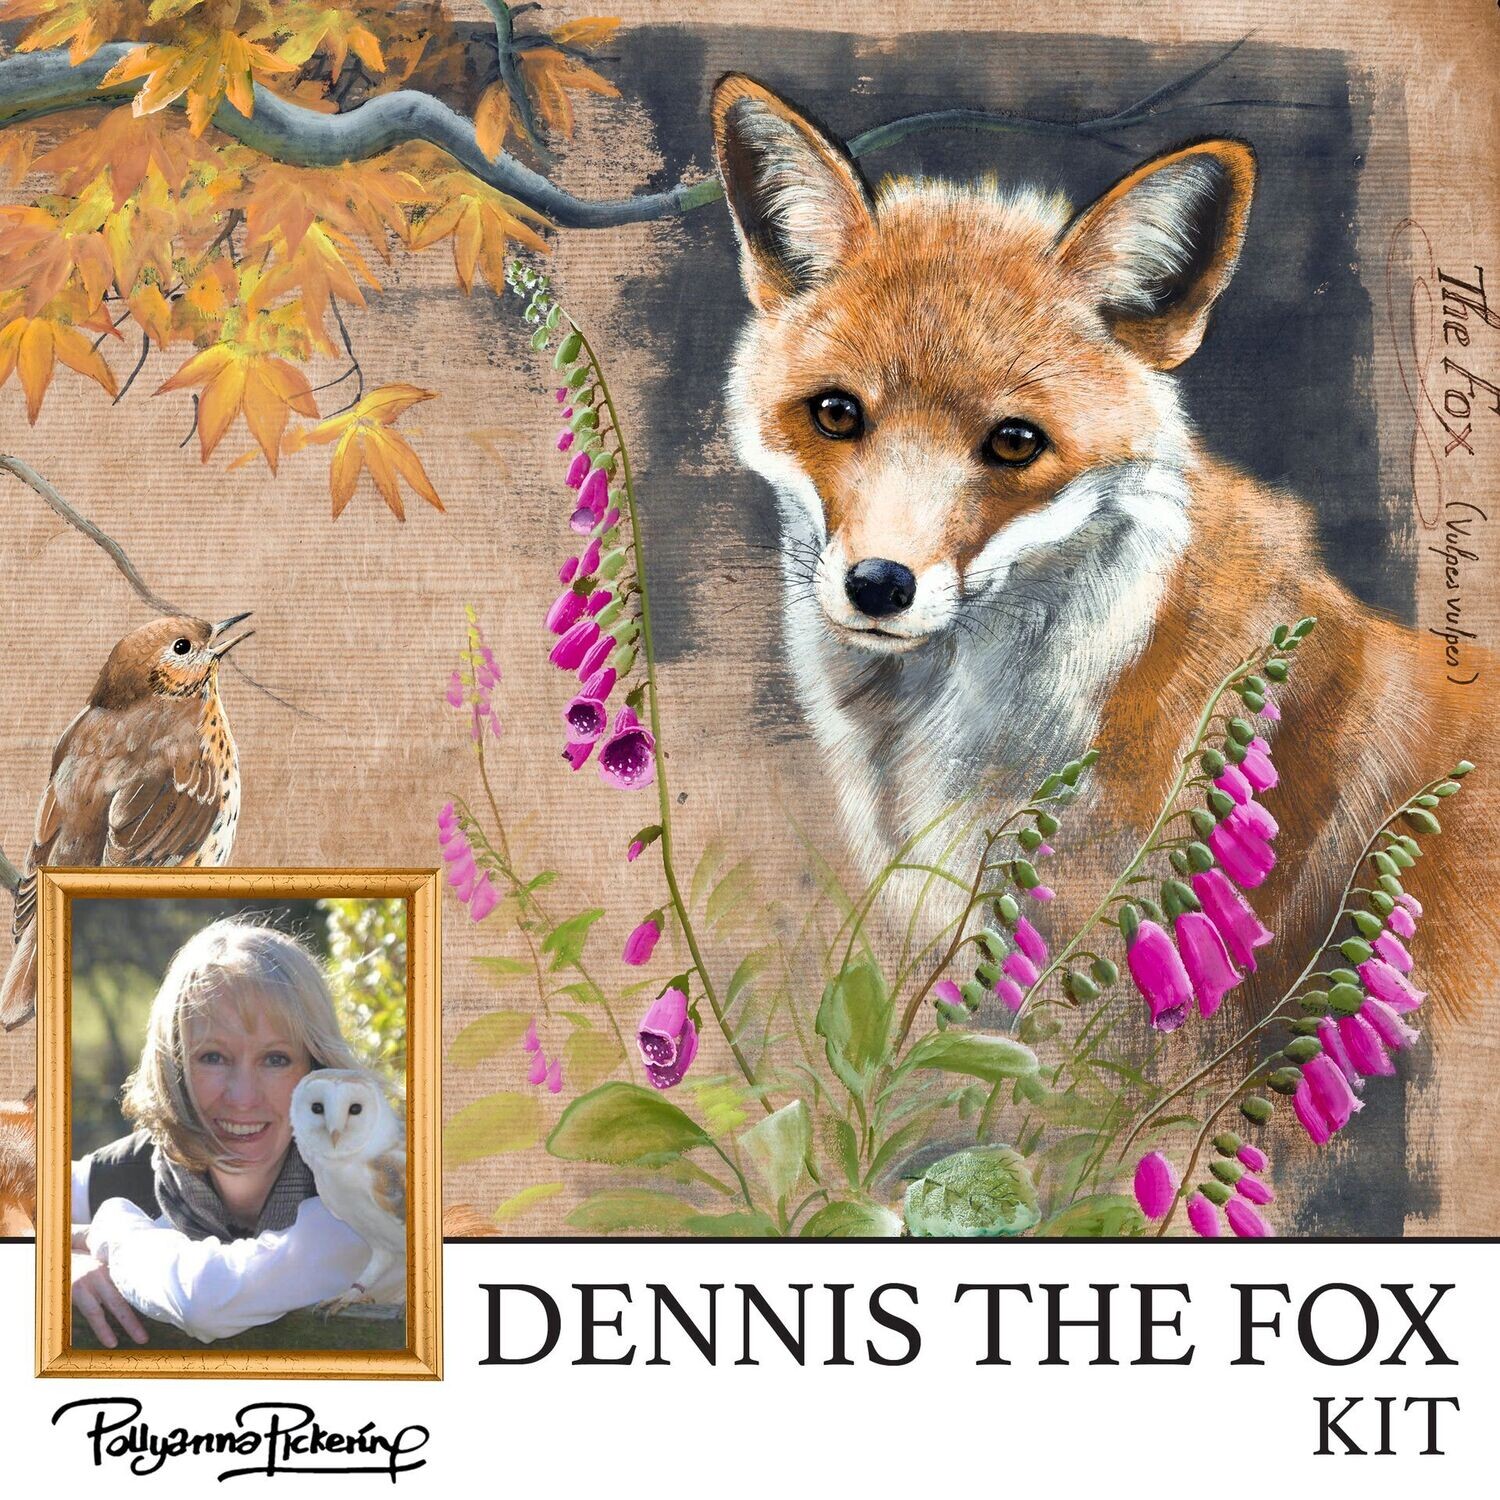 Pollyanna Pickering's Dennis the Fox Digital Kit